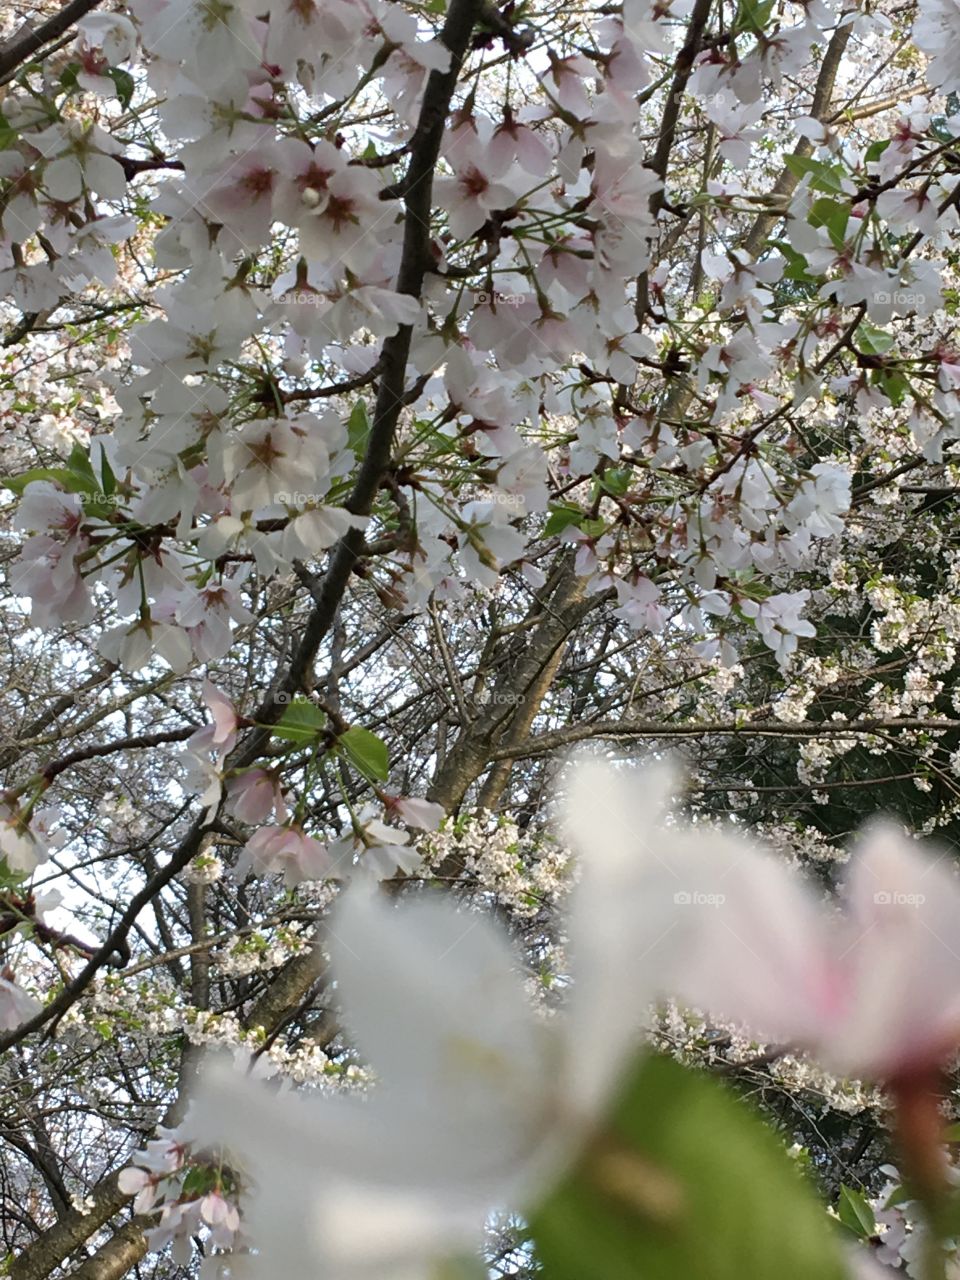 More white cherry blossoms very pretty 